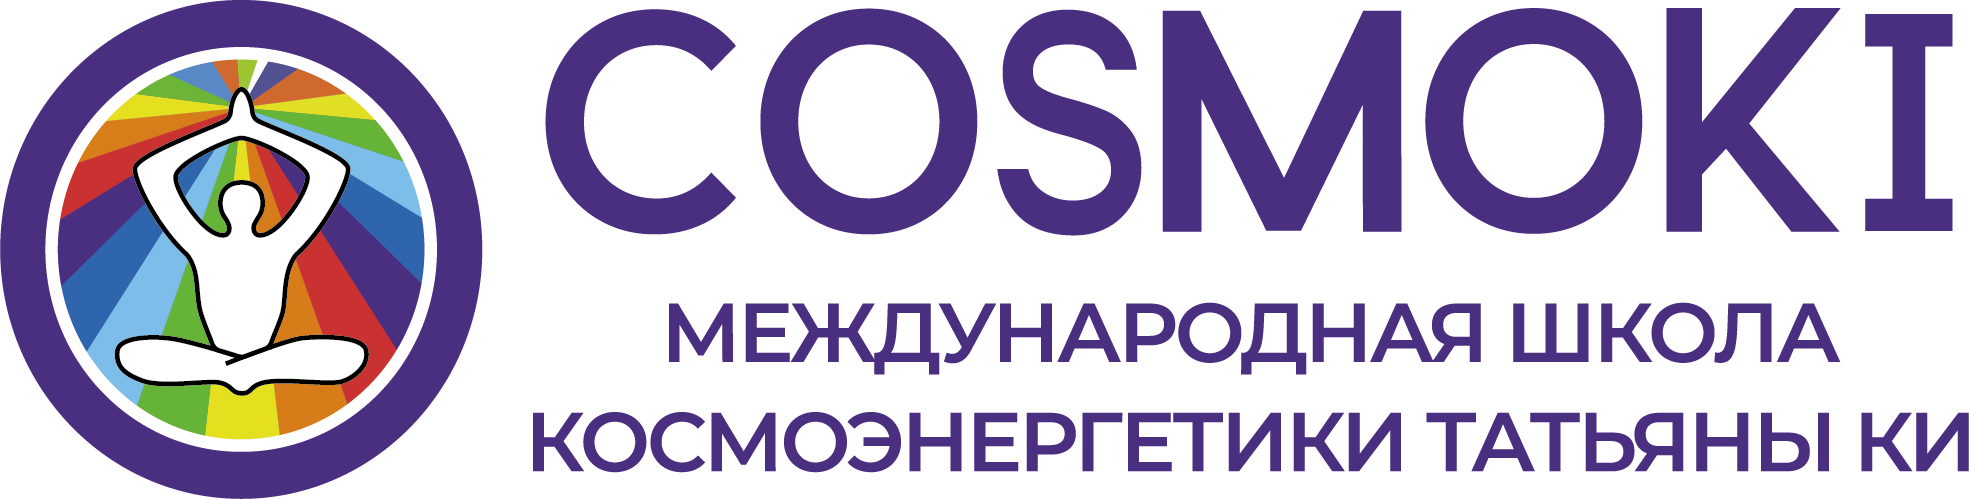 логотип школы космоэнергетики